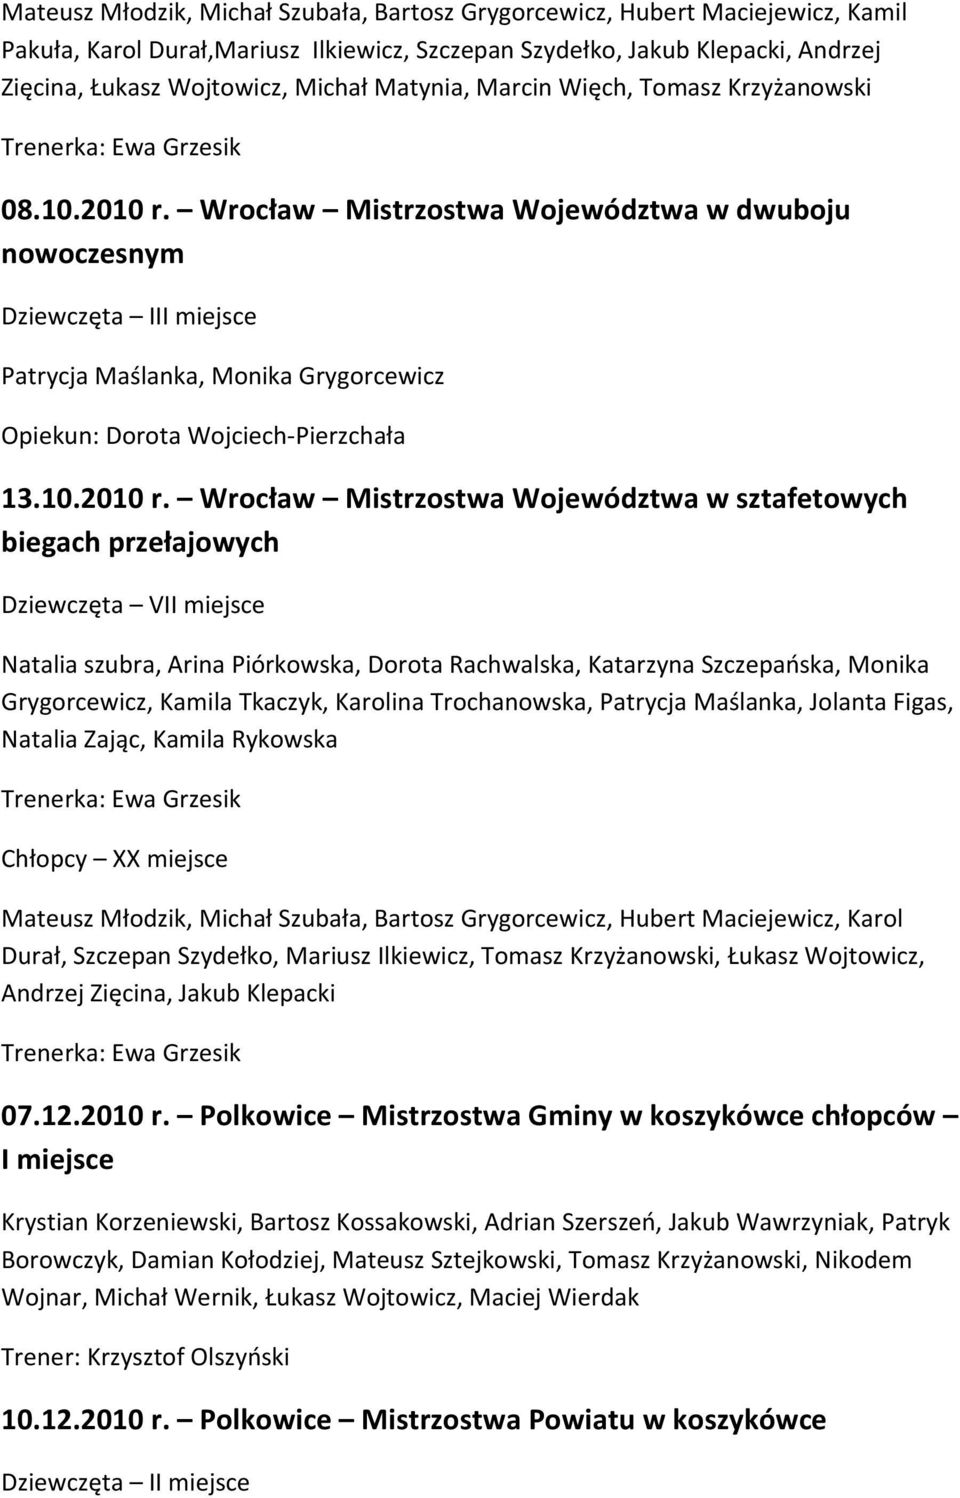 Wrocław Mistrzostwa Województwa w dwuboju nowoczesnym Dziewczęta III miejsce Patrycja Maślanka, Monika Grygorcewicz Opiekun: Dorota Wojciech-Pierzchała 13.10.2010 r.